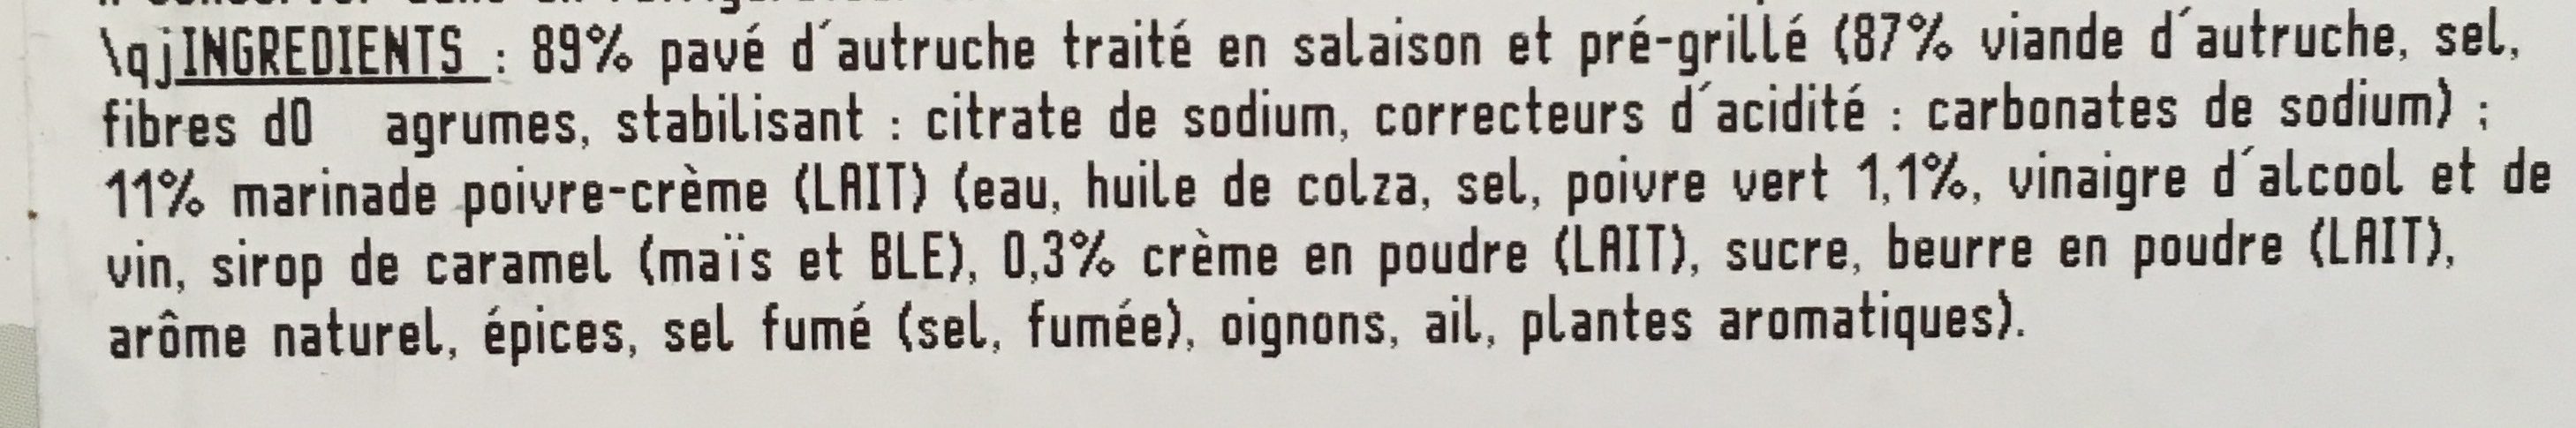 Paves d’autruche - Ingredients - fr